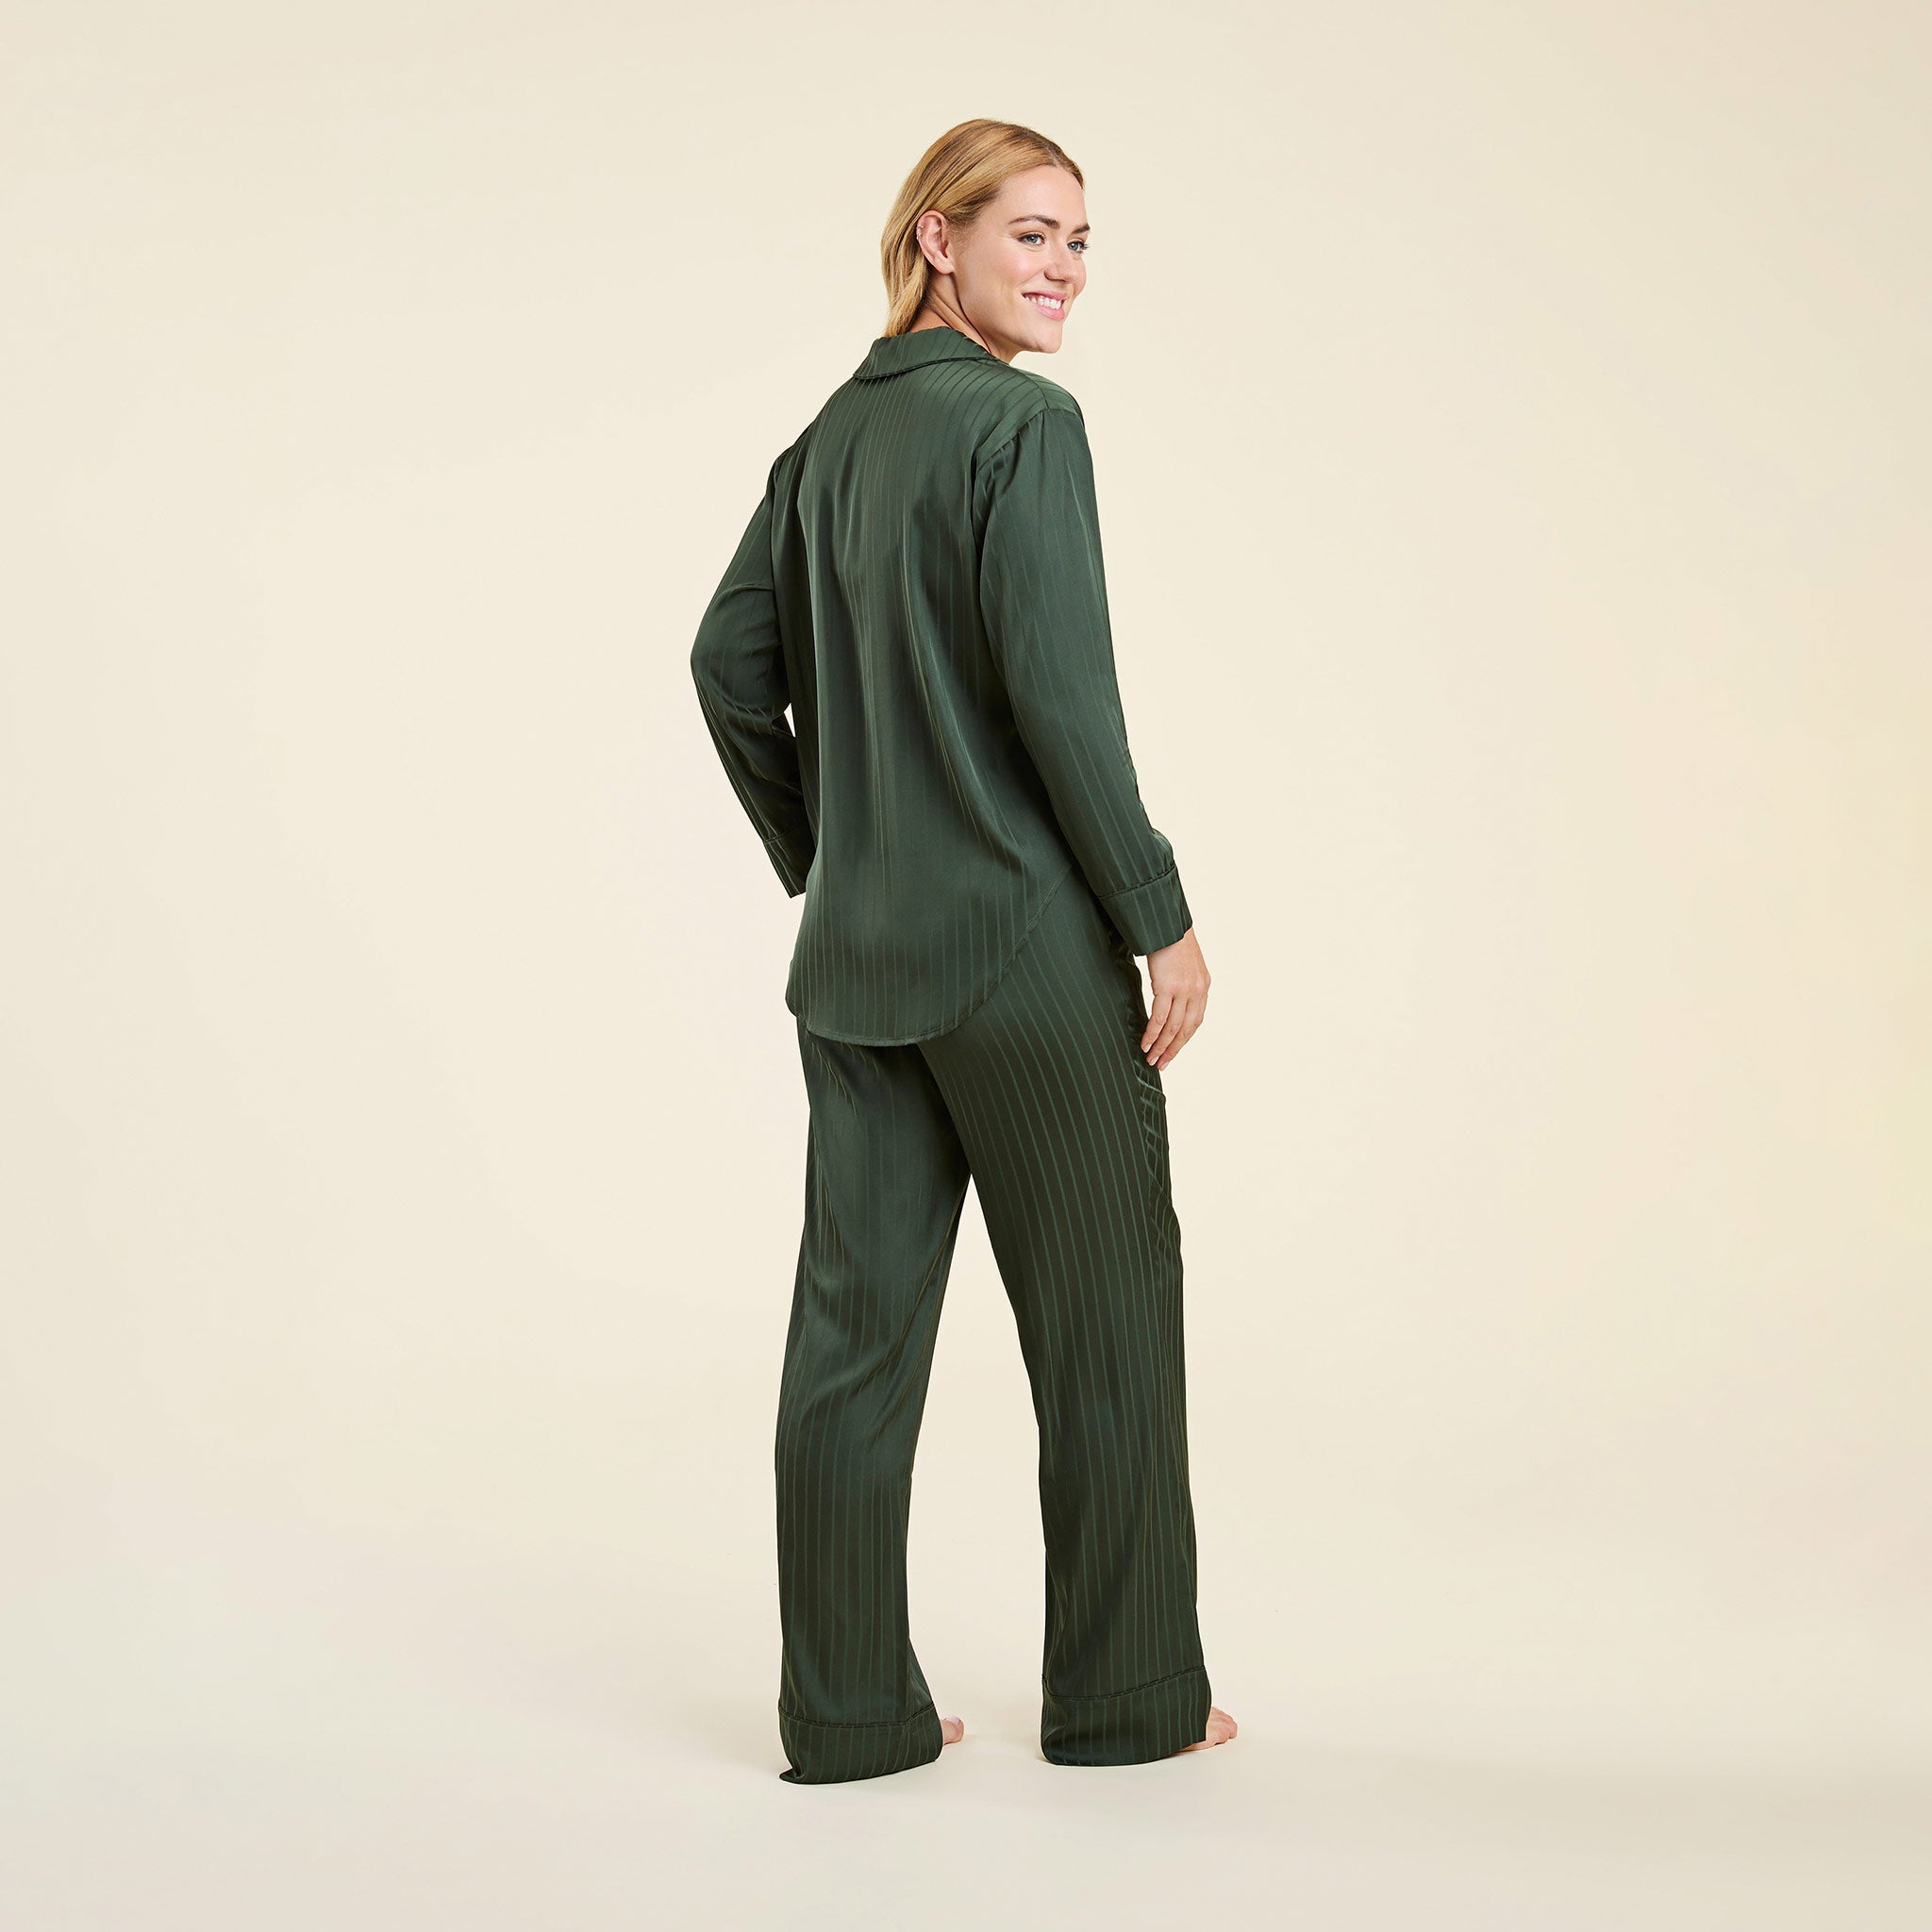 Satin Pajama Set | Evergreen